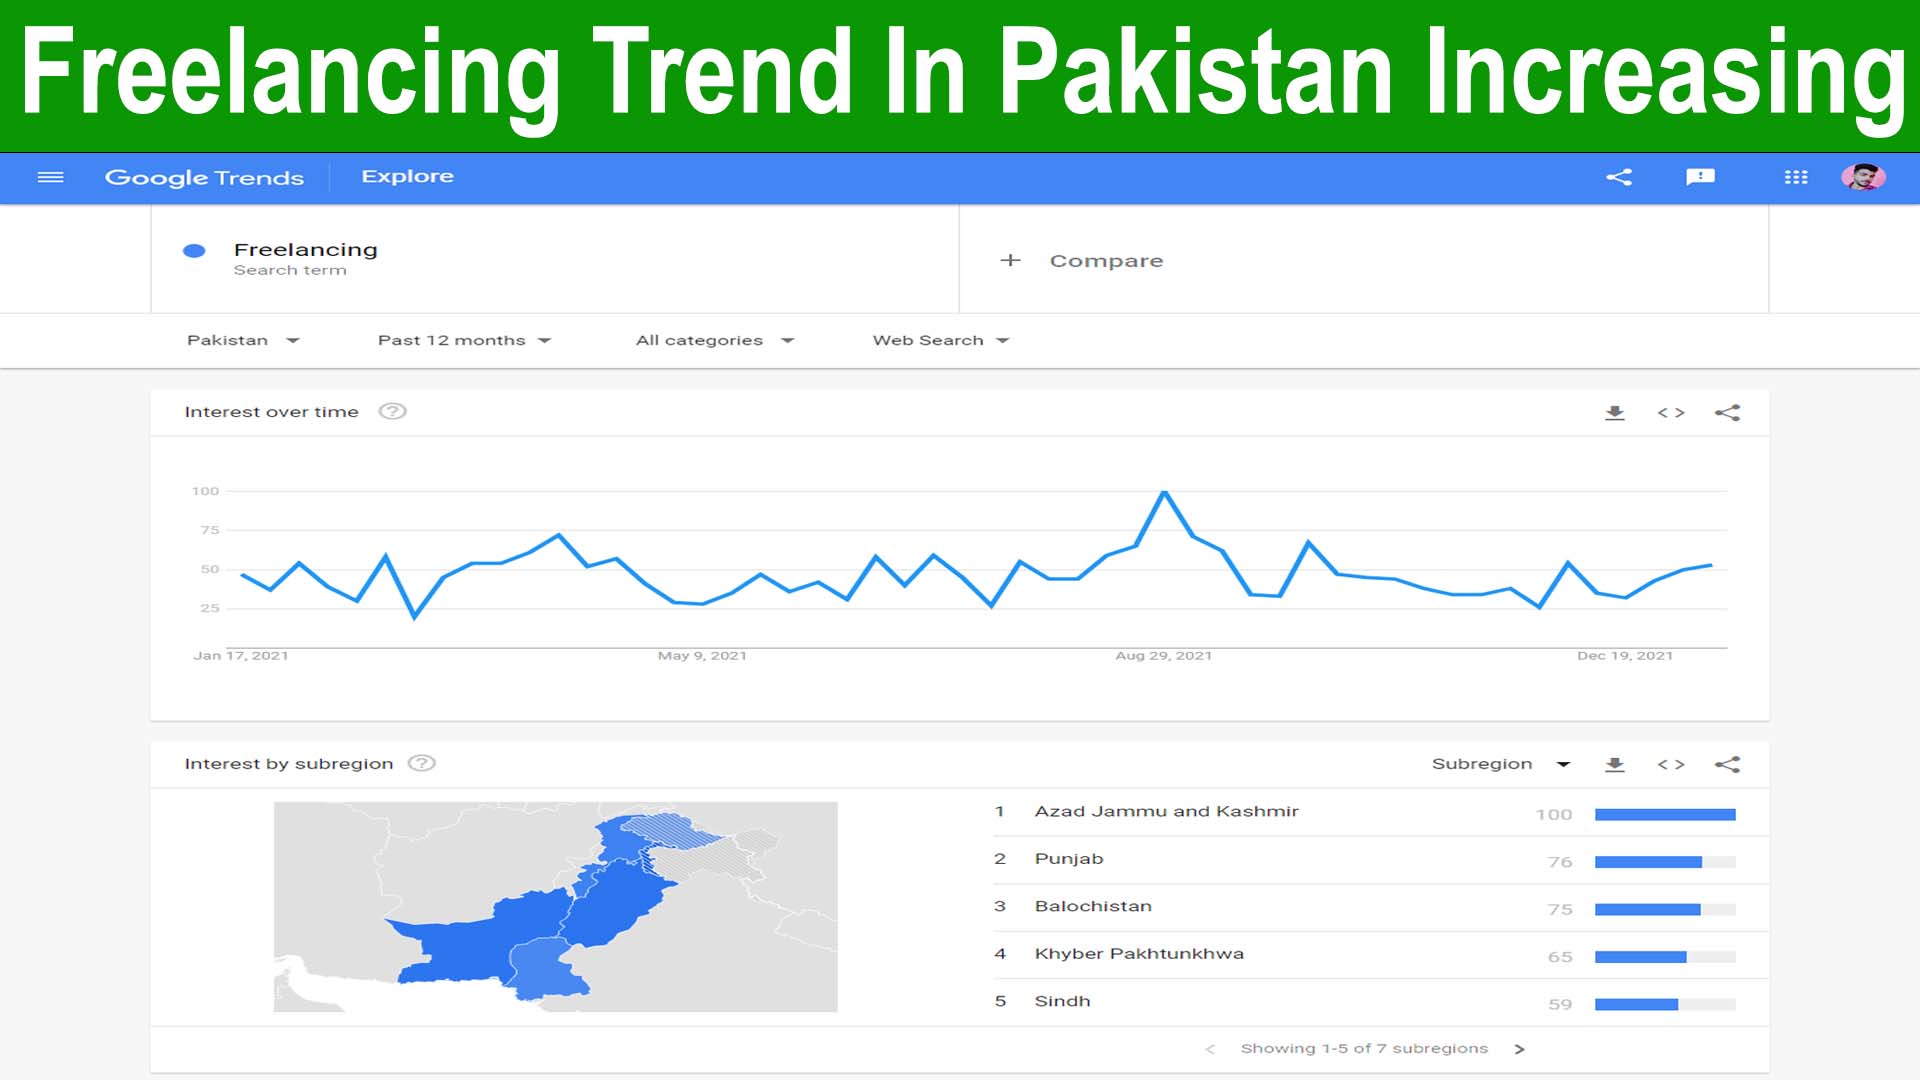 Freelancing trend in Pakistan is increasing last 12 months